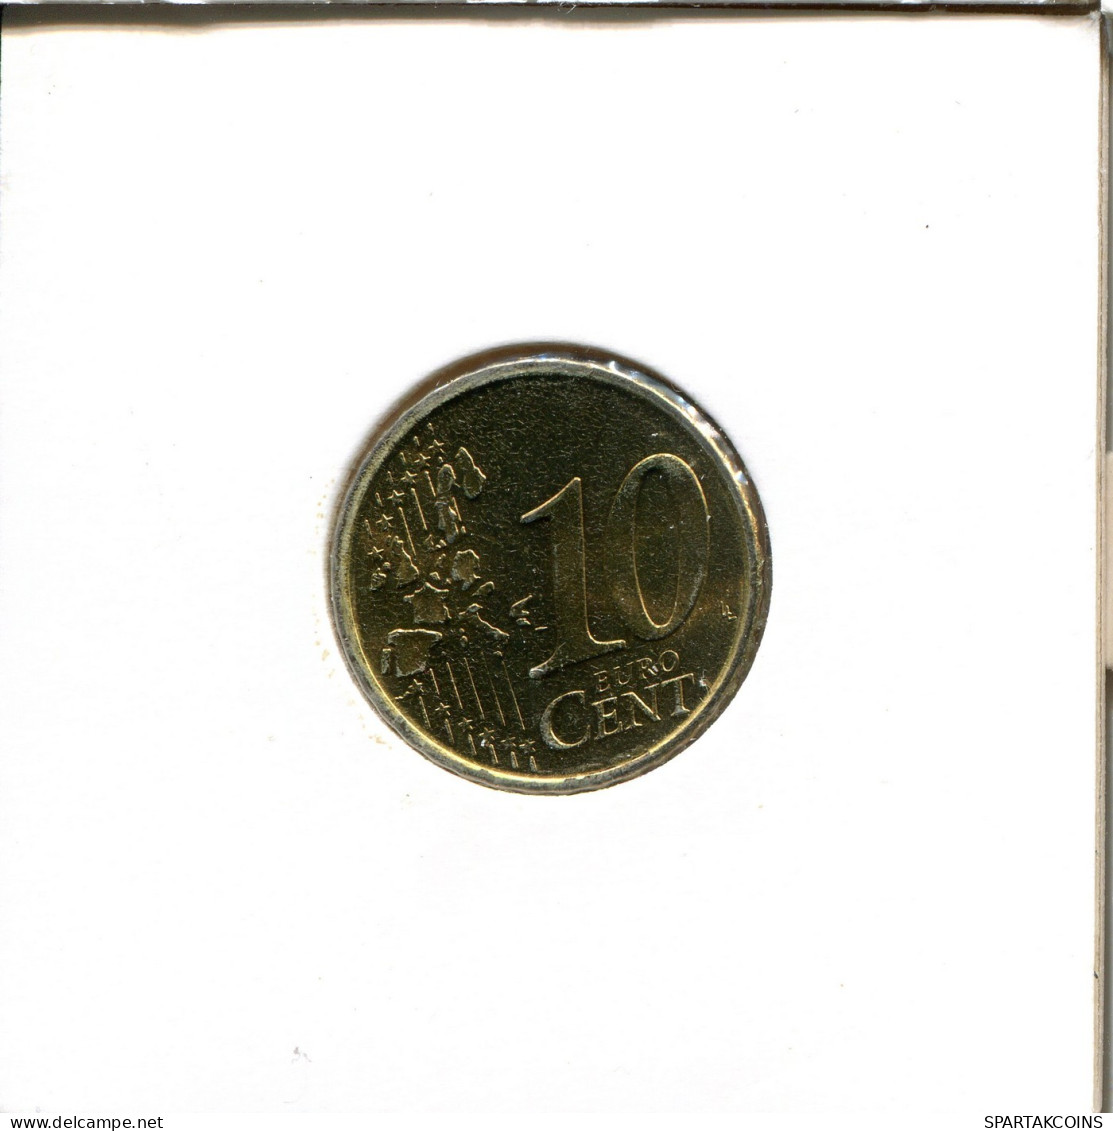 10 EURO CENTS 2006 ESPAÑA Moneda SPAIN #EU558.E.A - Espagne